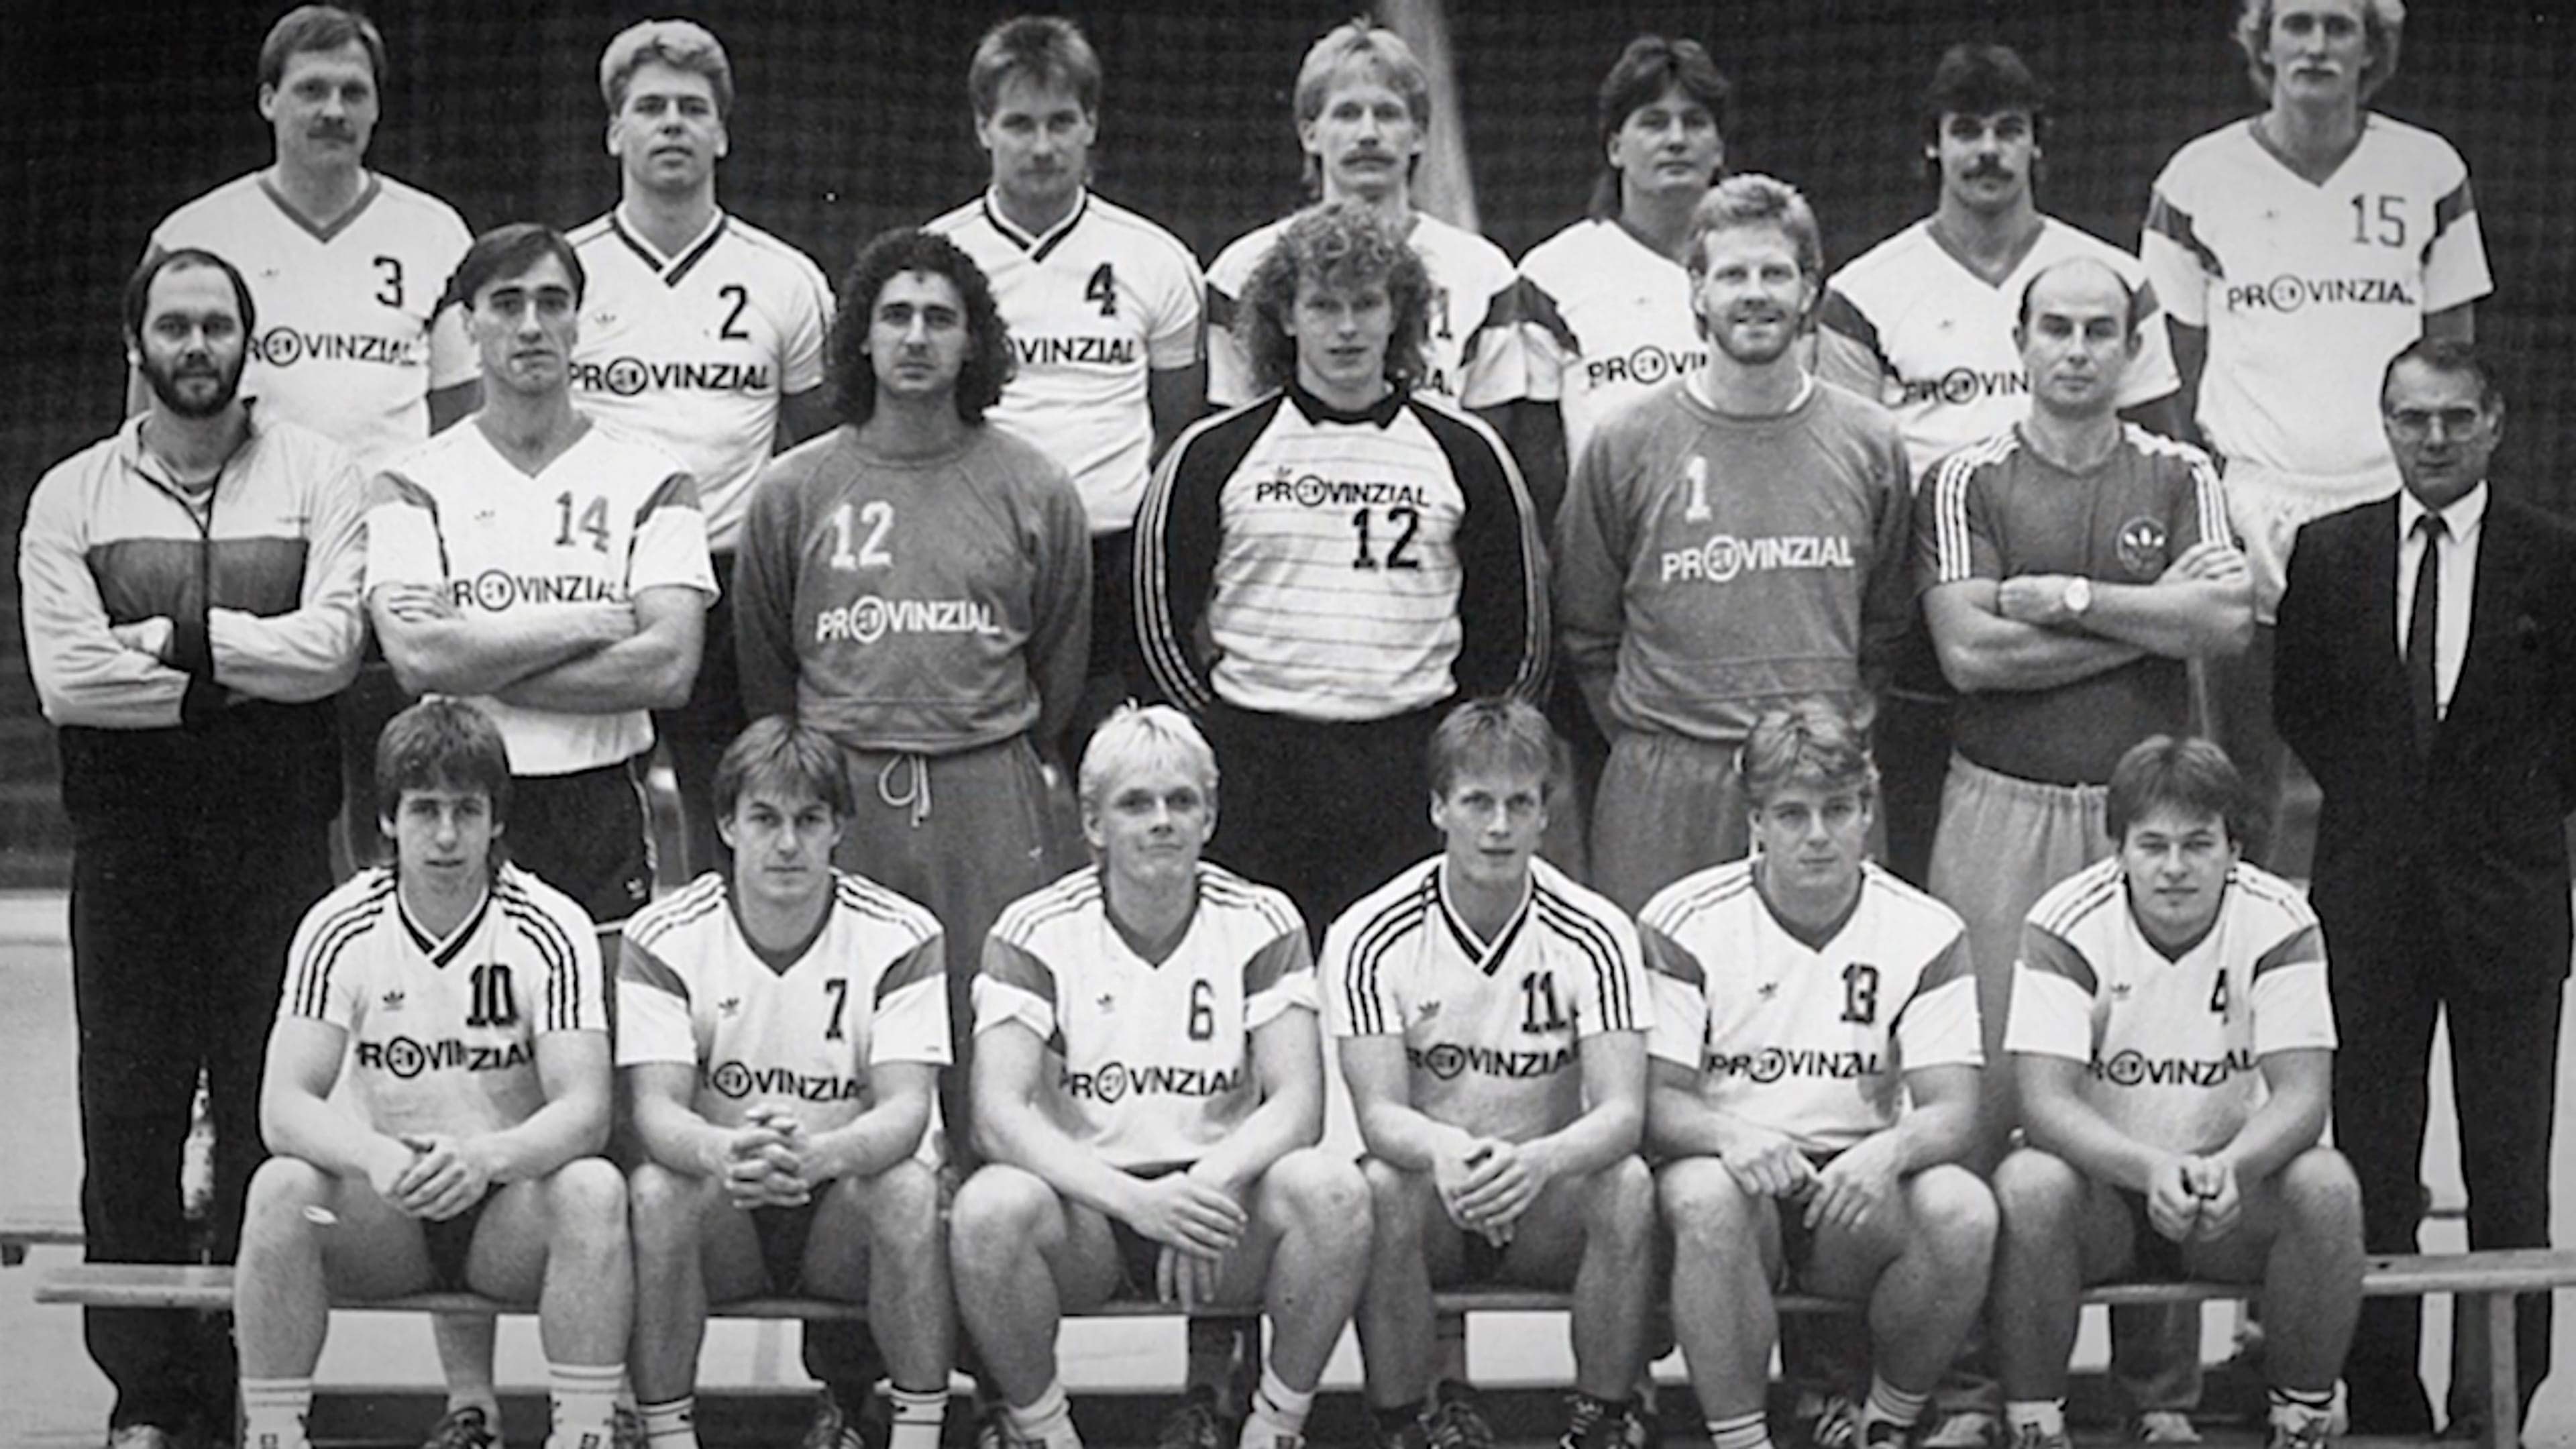 Eine alte schwarz weiß Fotografie der SG Handballmannschaft